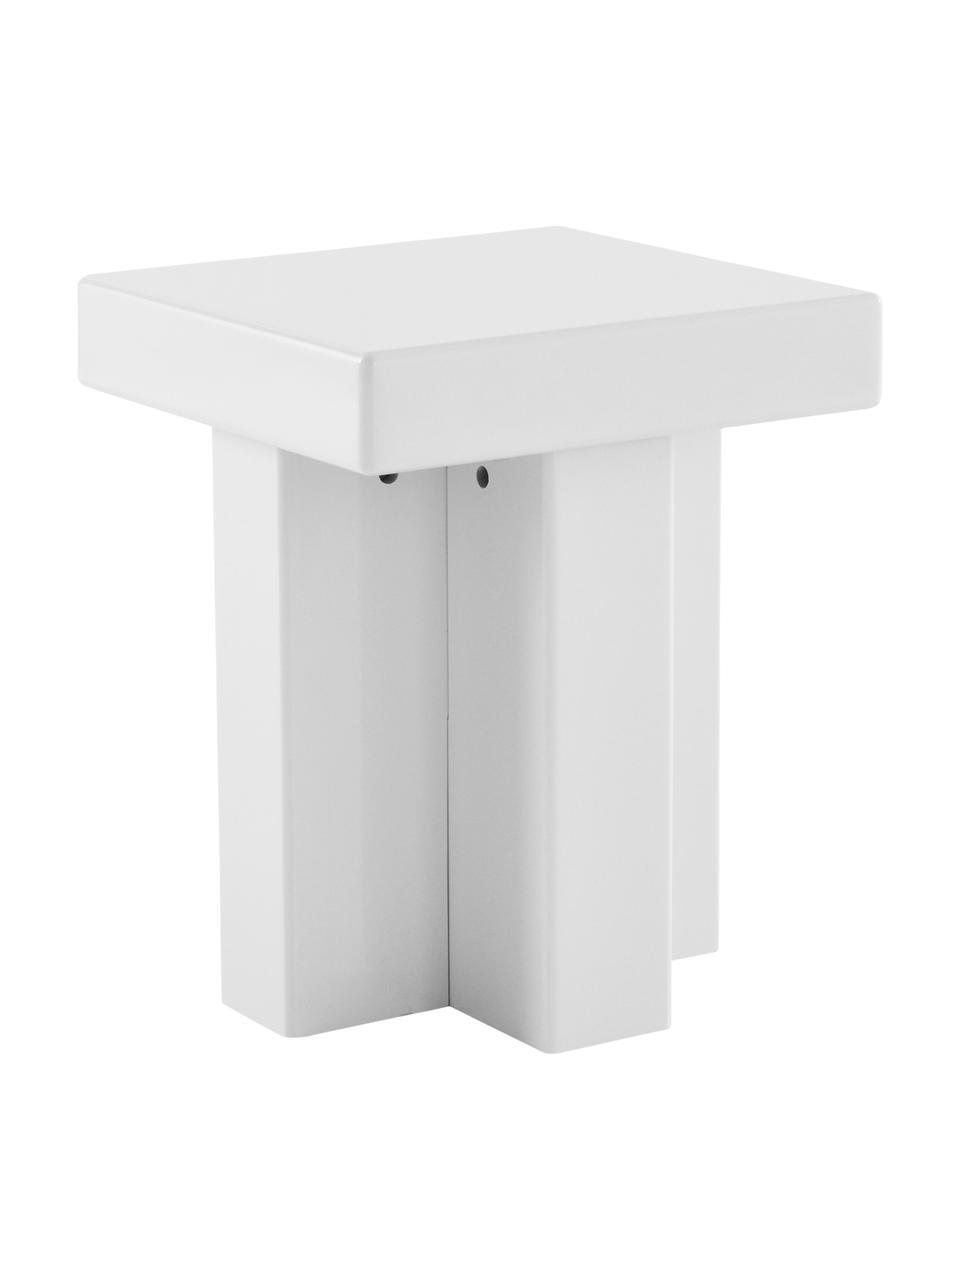 Table d'appoint Crozz, MDF (panneau en fibres de bois à densité moyenne), laqué, Blanc, larg. 40 x haut. 58 cm